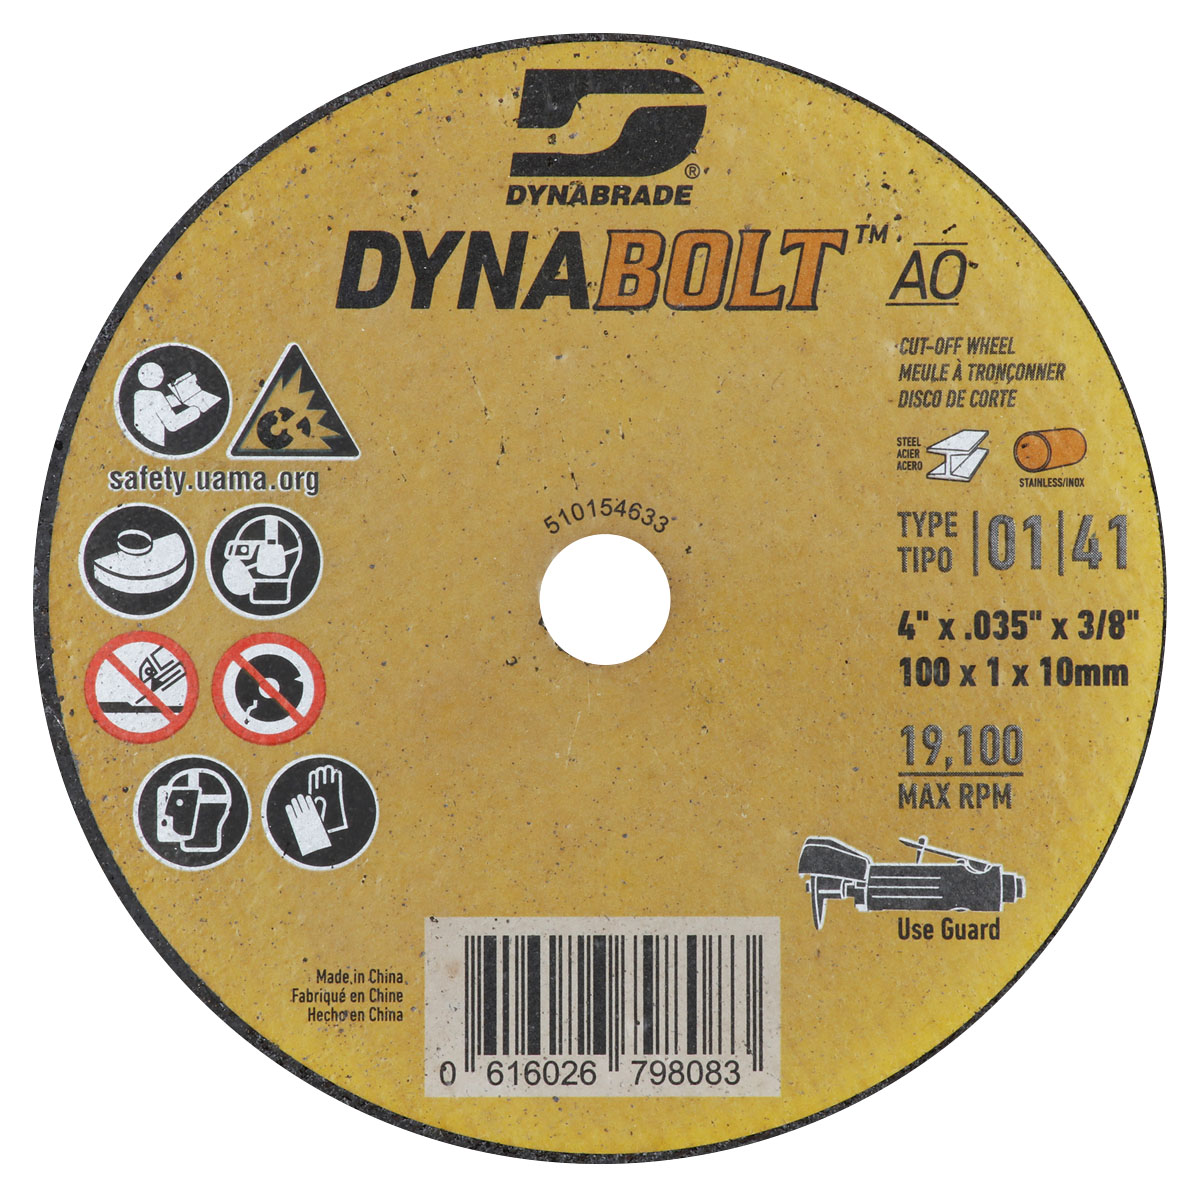 DynaBolt AO 4" x .035" x 3/8" T1 Cut-off Wheel